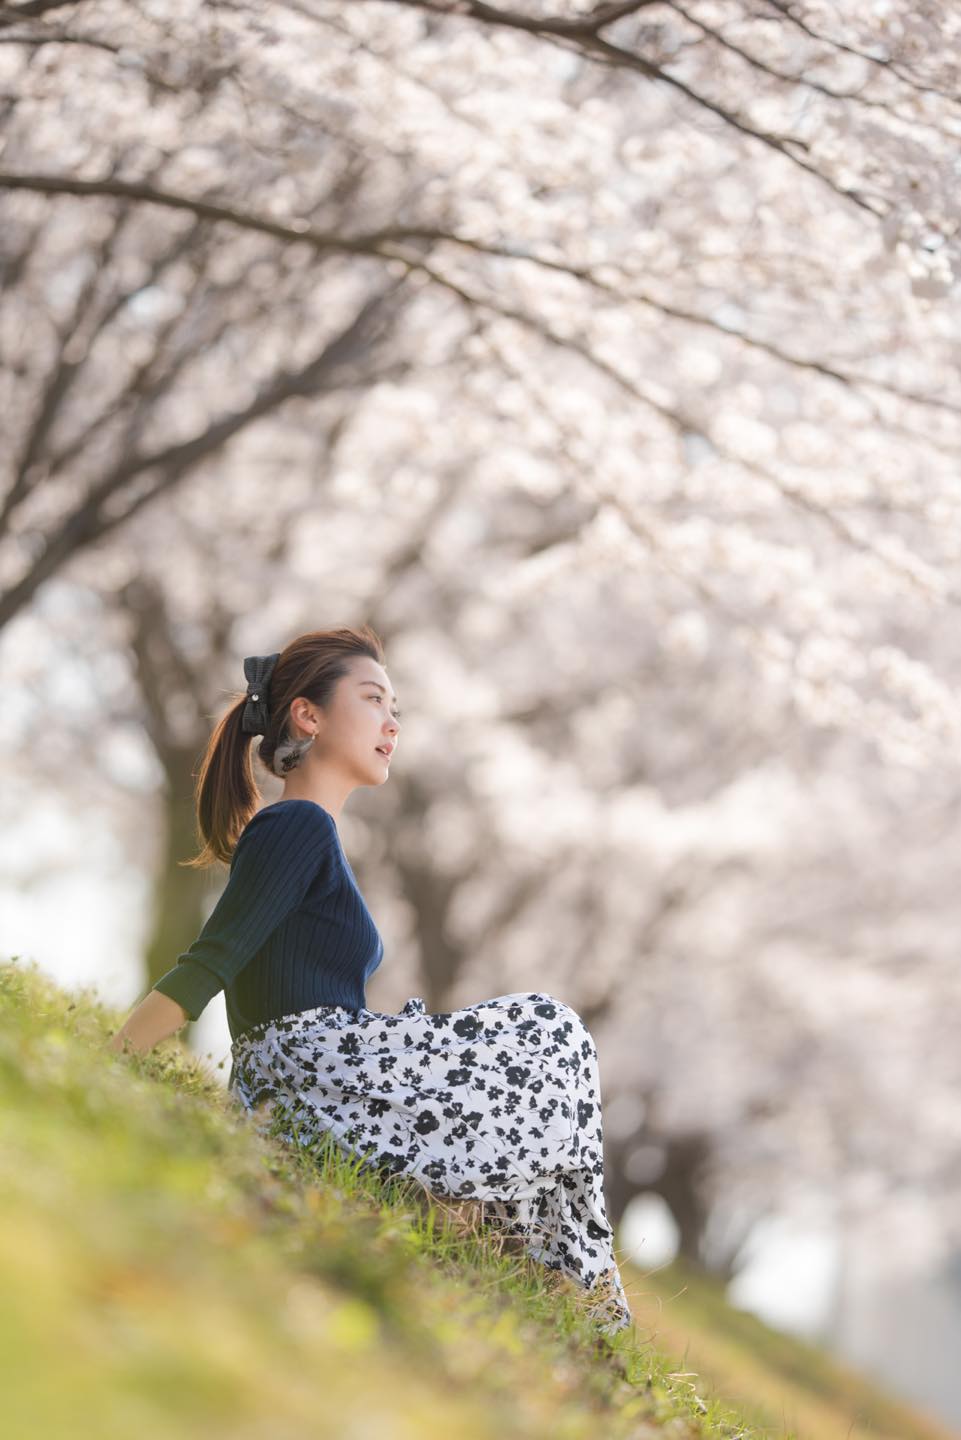 桜を背景にしたポートレート撮影